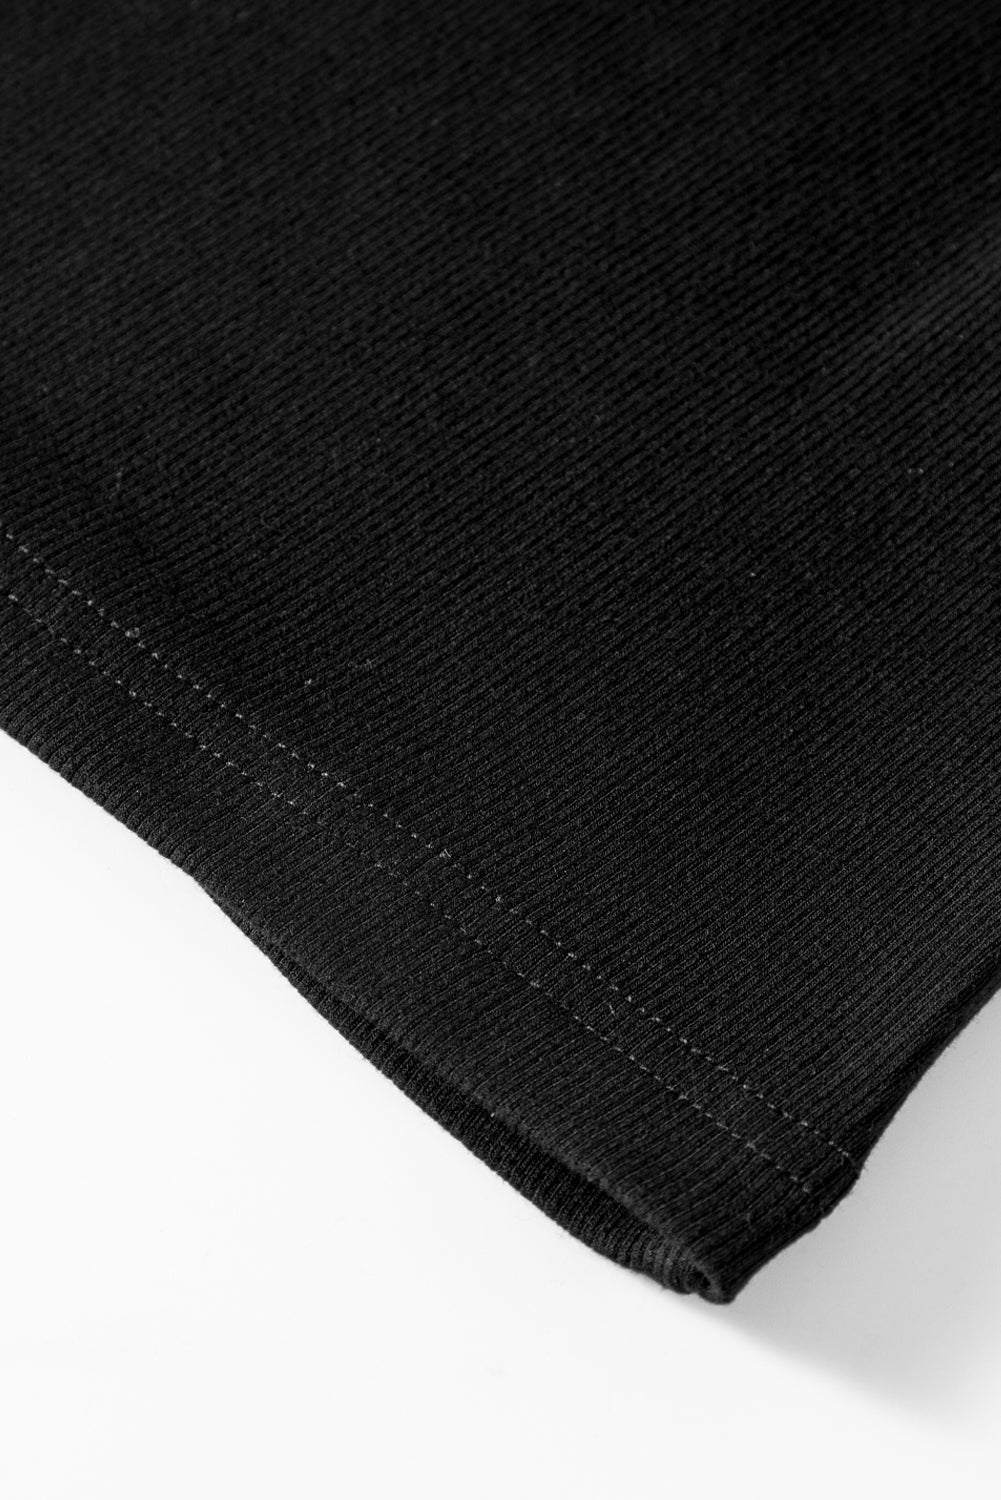 Črna majica s pol rokavi z bleščicami